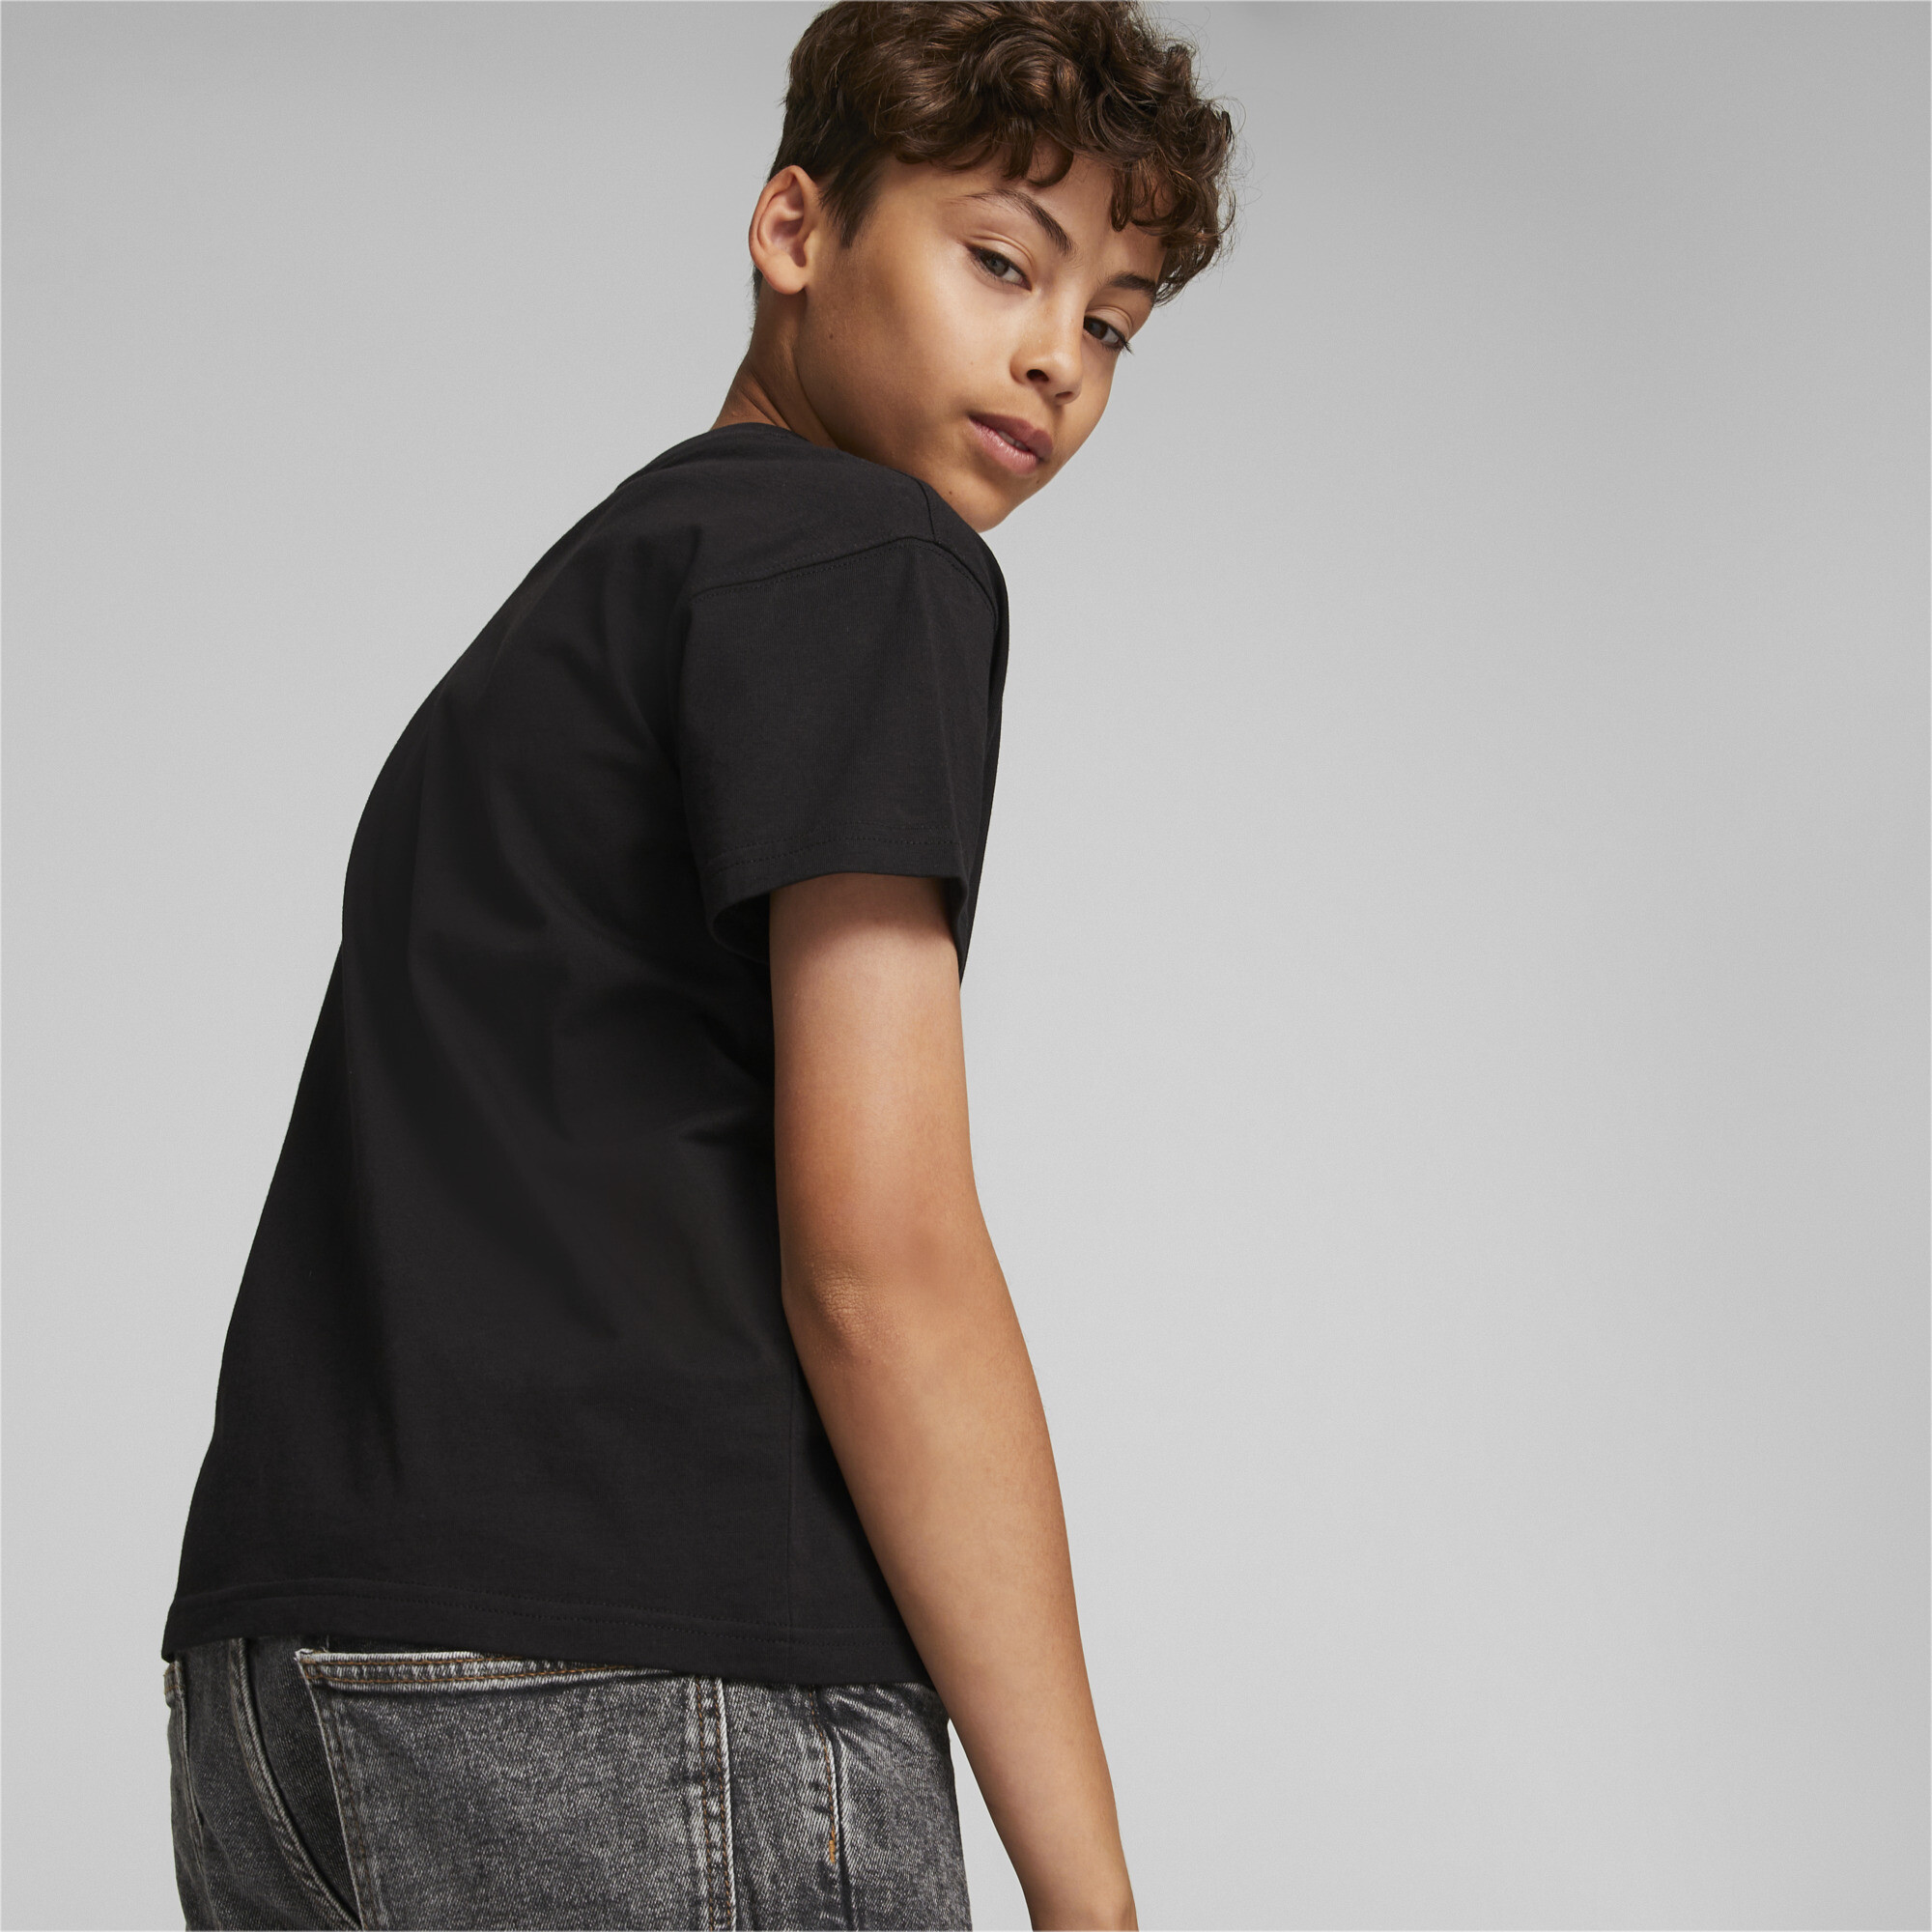 PUMA Fandom T-Shirt In Black, Size 15-16 Youth